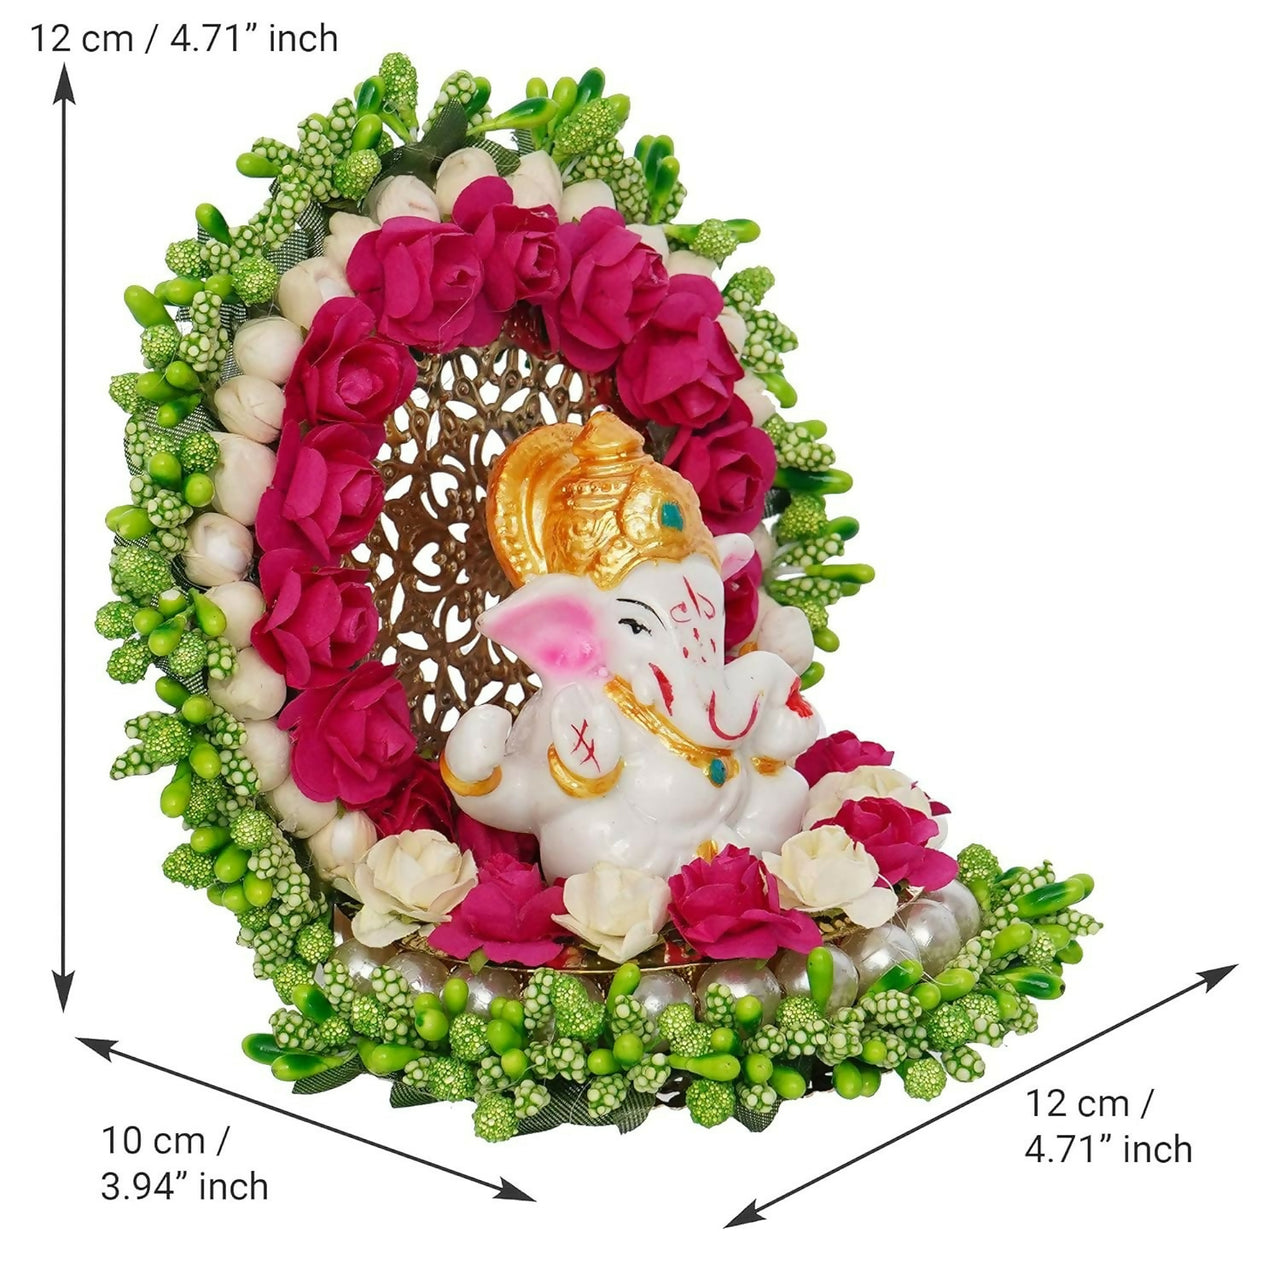 eCraftIndia Polyresin Lord Ganesha Idol - Distacart